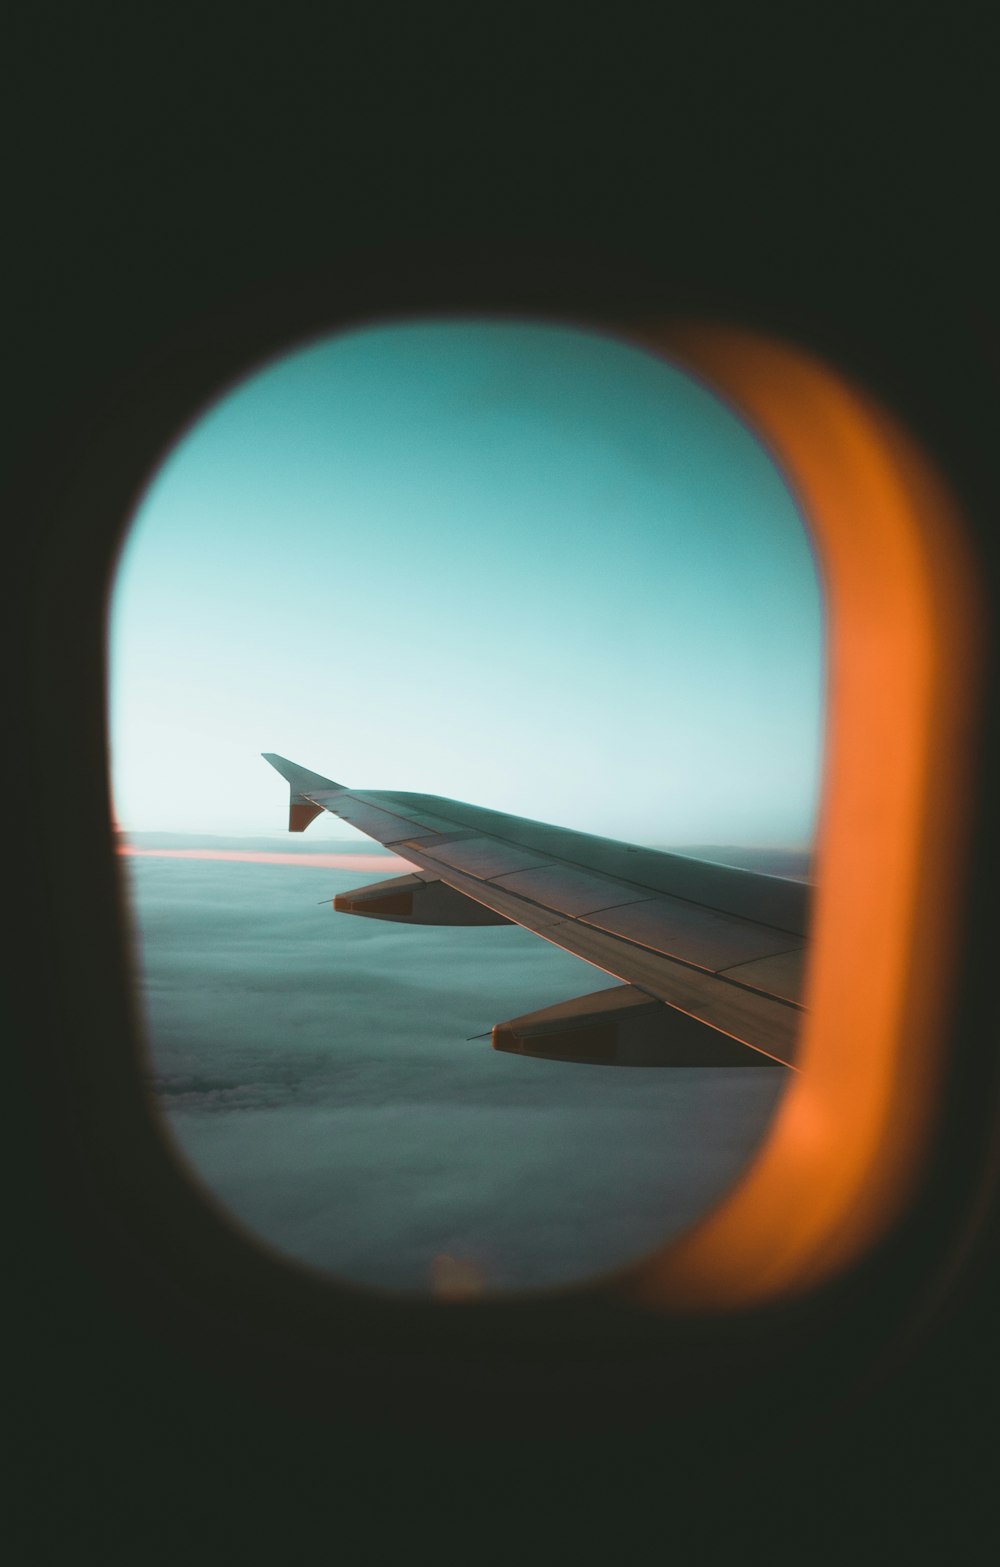 ala de avión a través de una ventana de vidrio